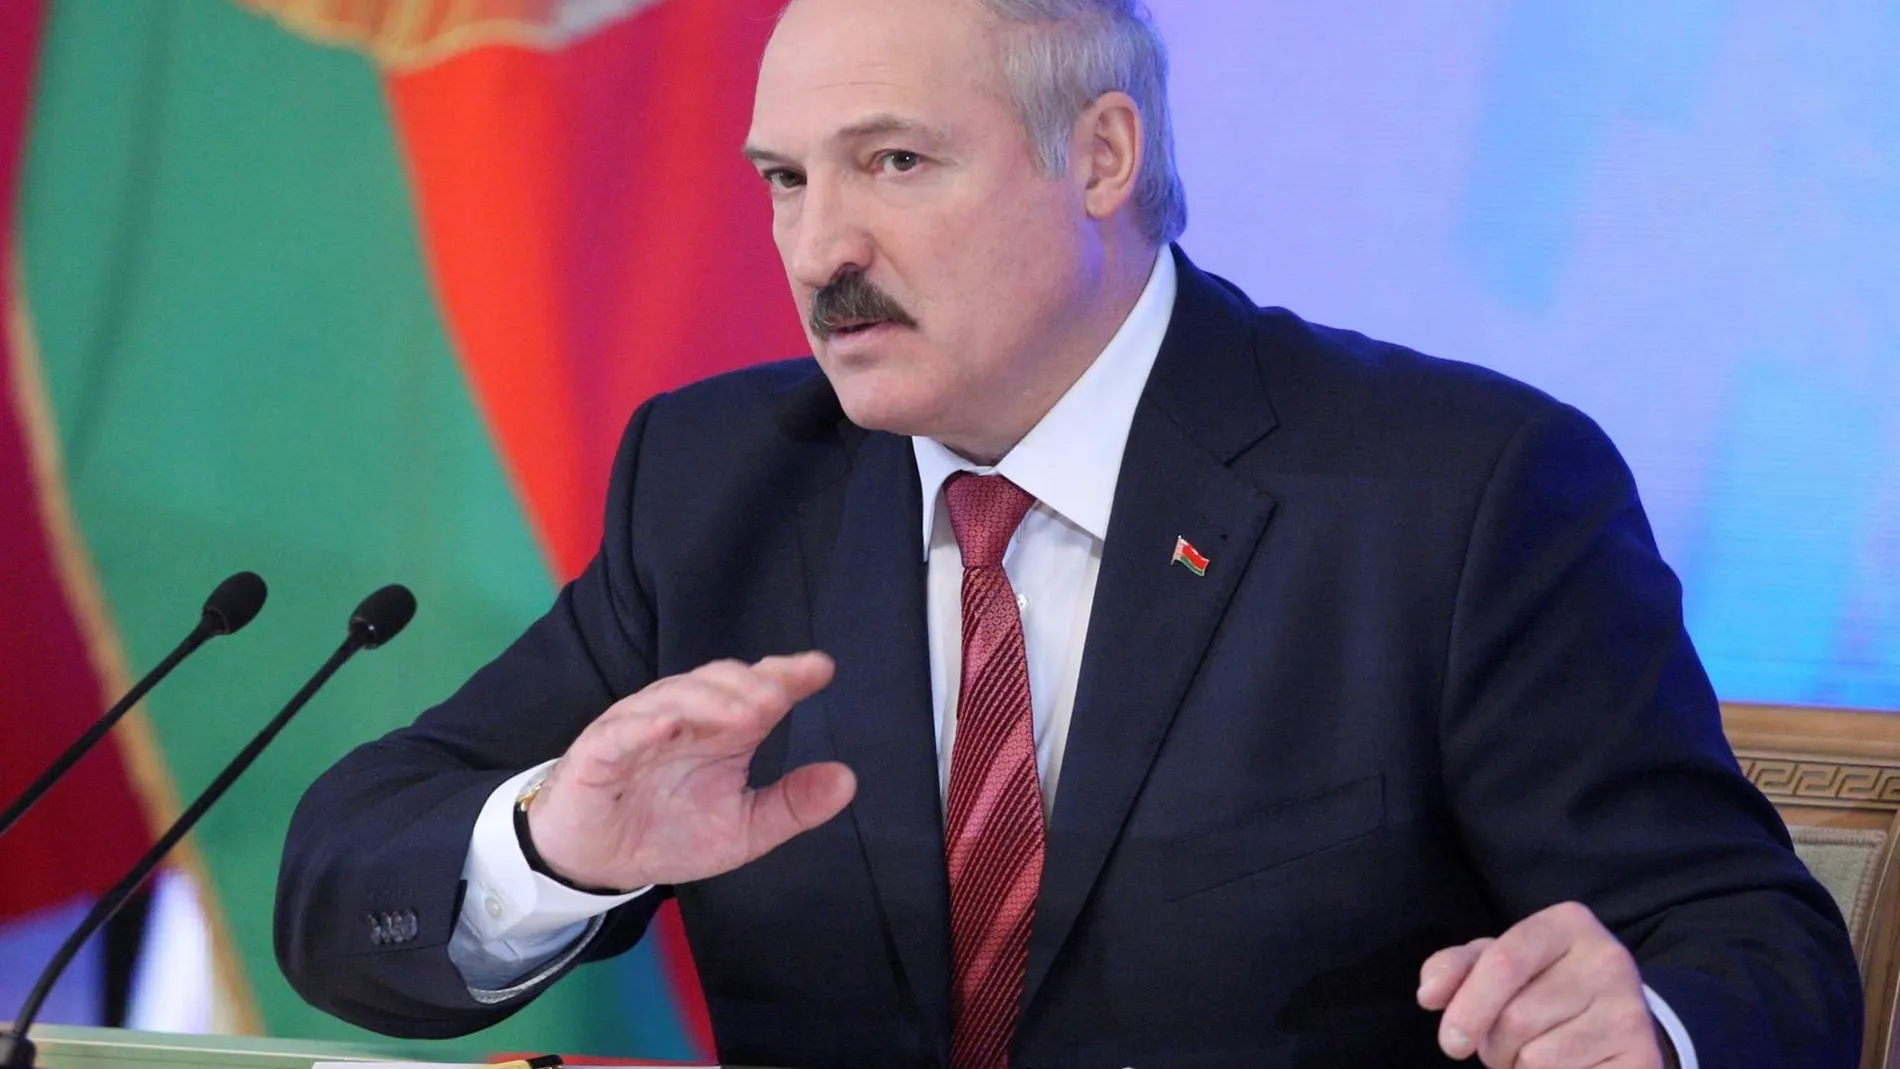 La Unión Europea impone nuevas sanciones contra Bielorrusia por las violaciones de derechos humanos en el país